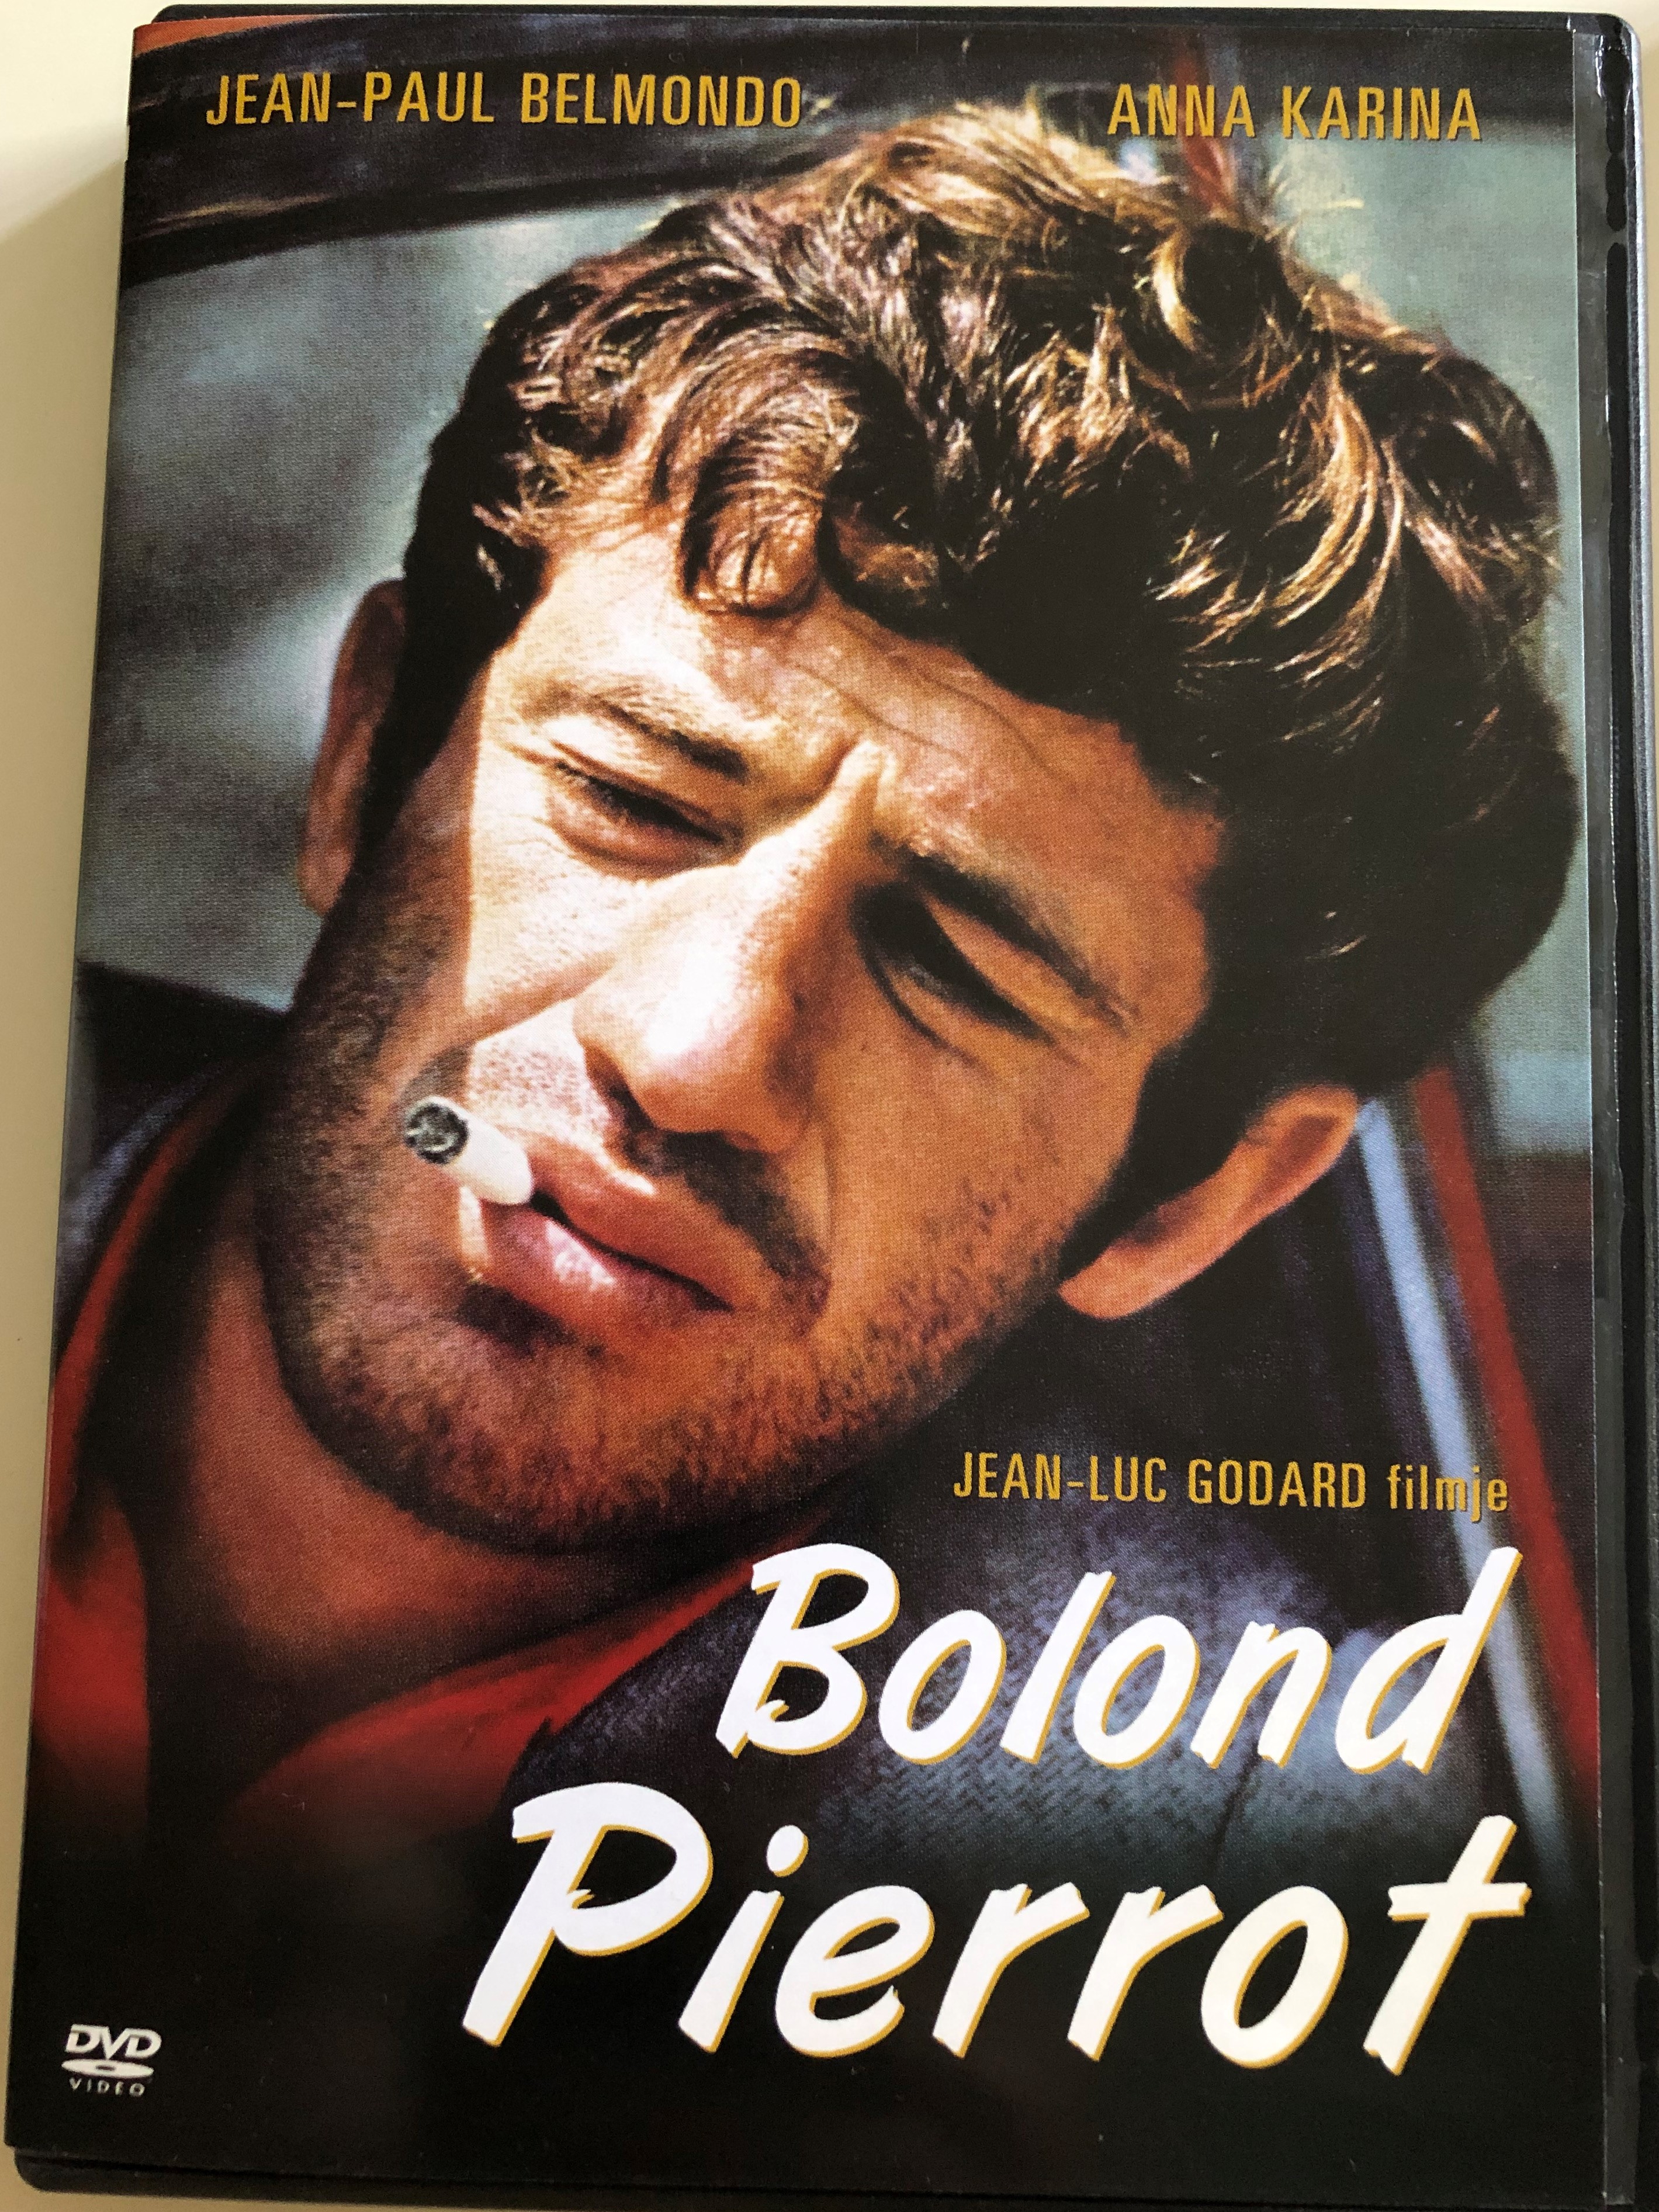 pierrot-le-fou-dvd-1965-bolond-pierrot-pierrot-the-madman-directed-by-jean-luc-godard-starring-jean-paul-belmondo-anna-karina-dirk-sanders-graziella-galvani-1-.jpg